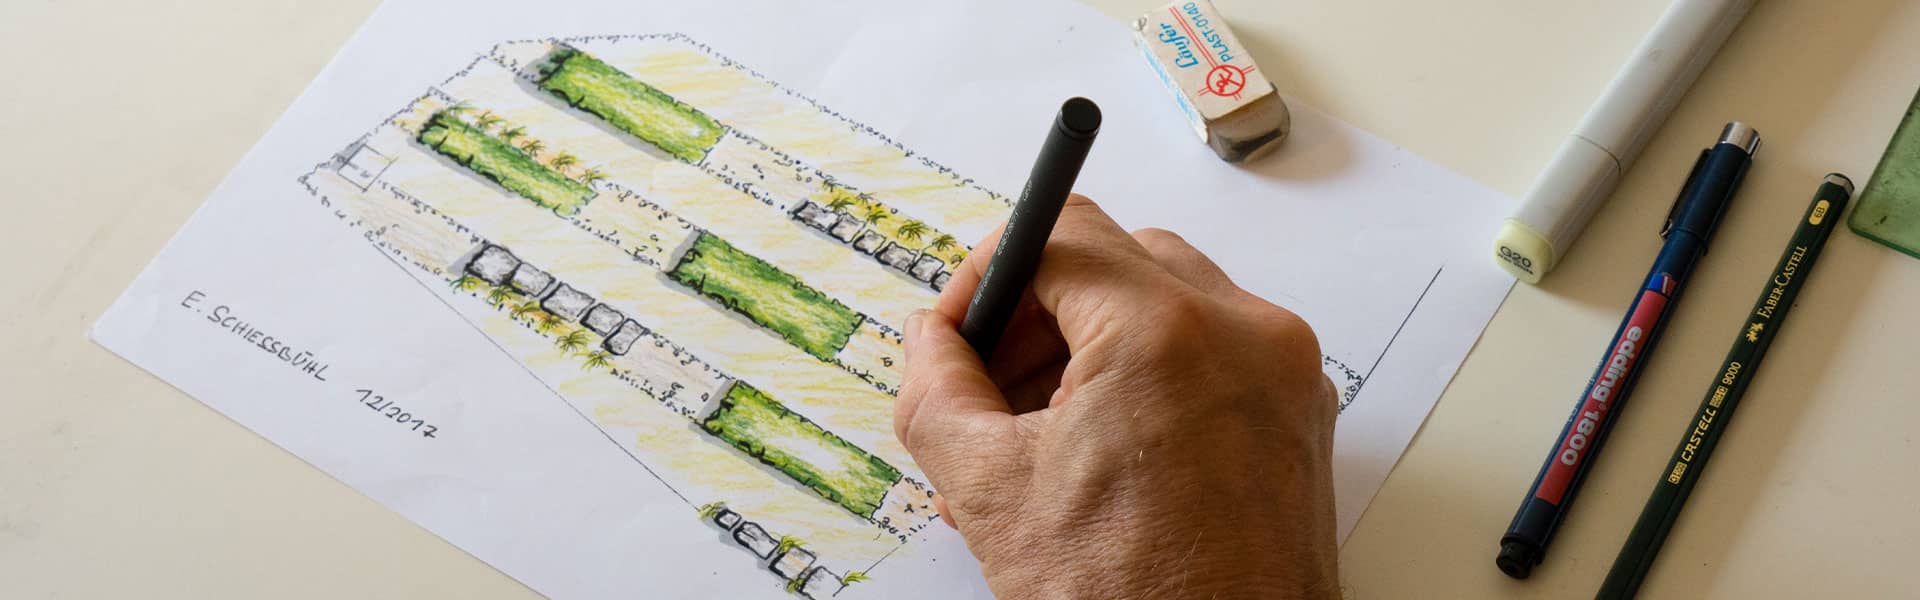 Erich Schießbühl beim zeichnen eines Gartenplans